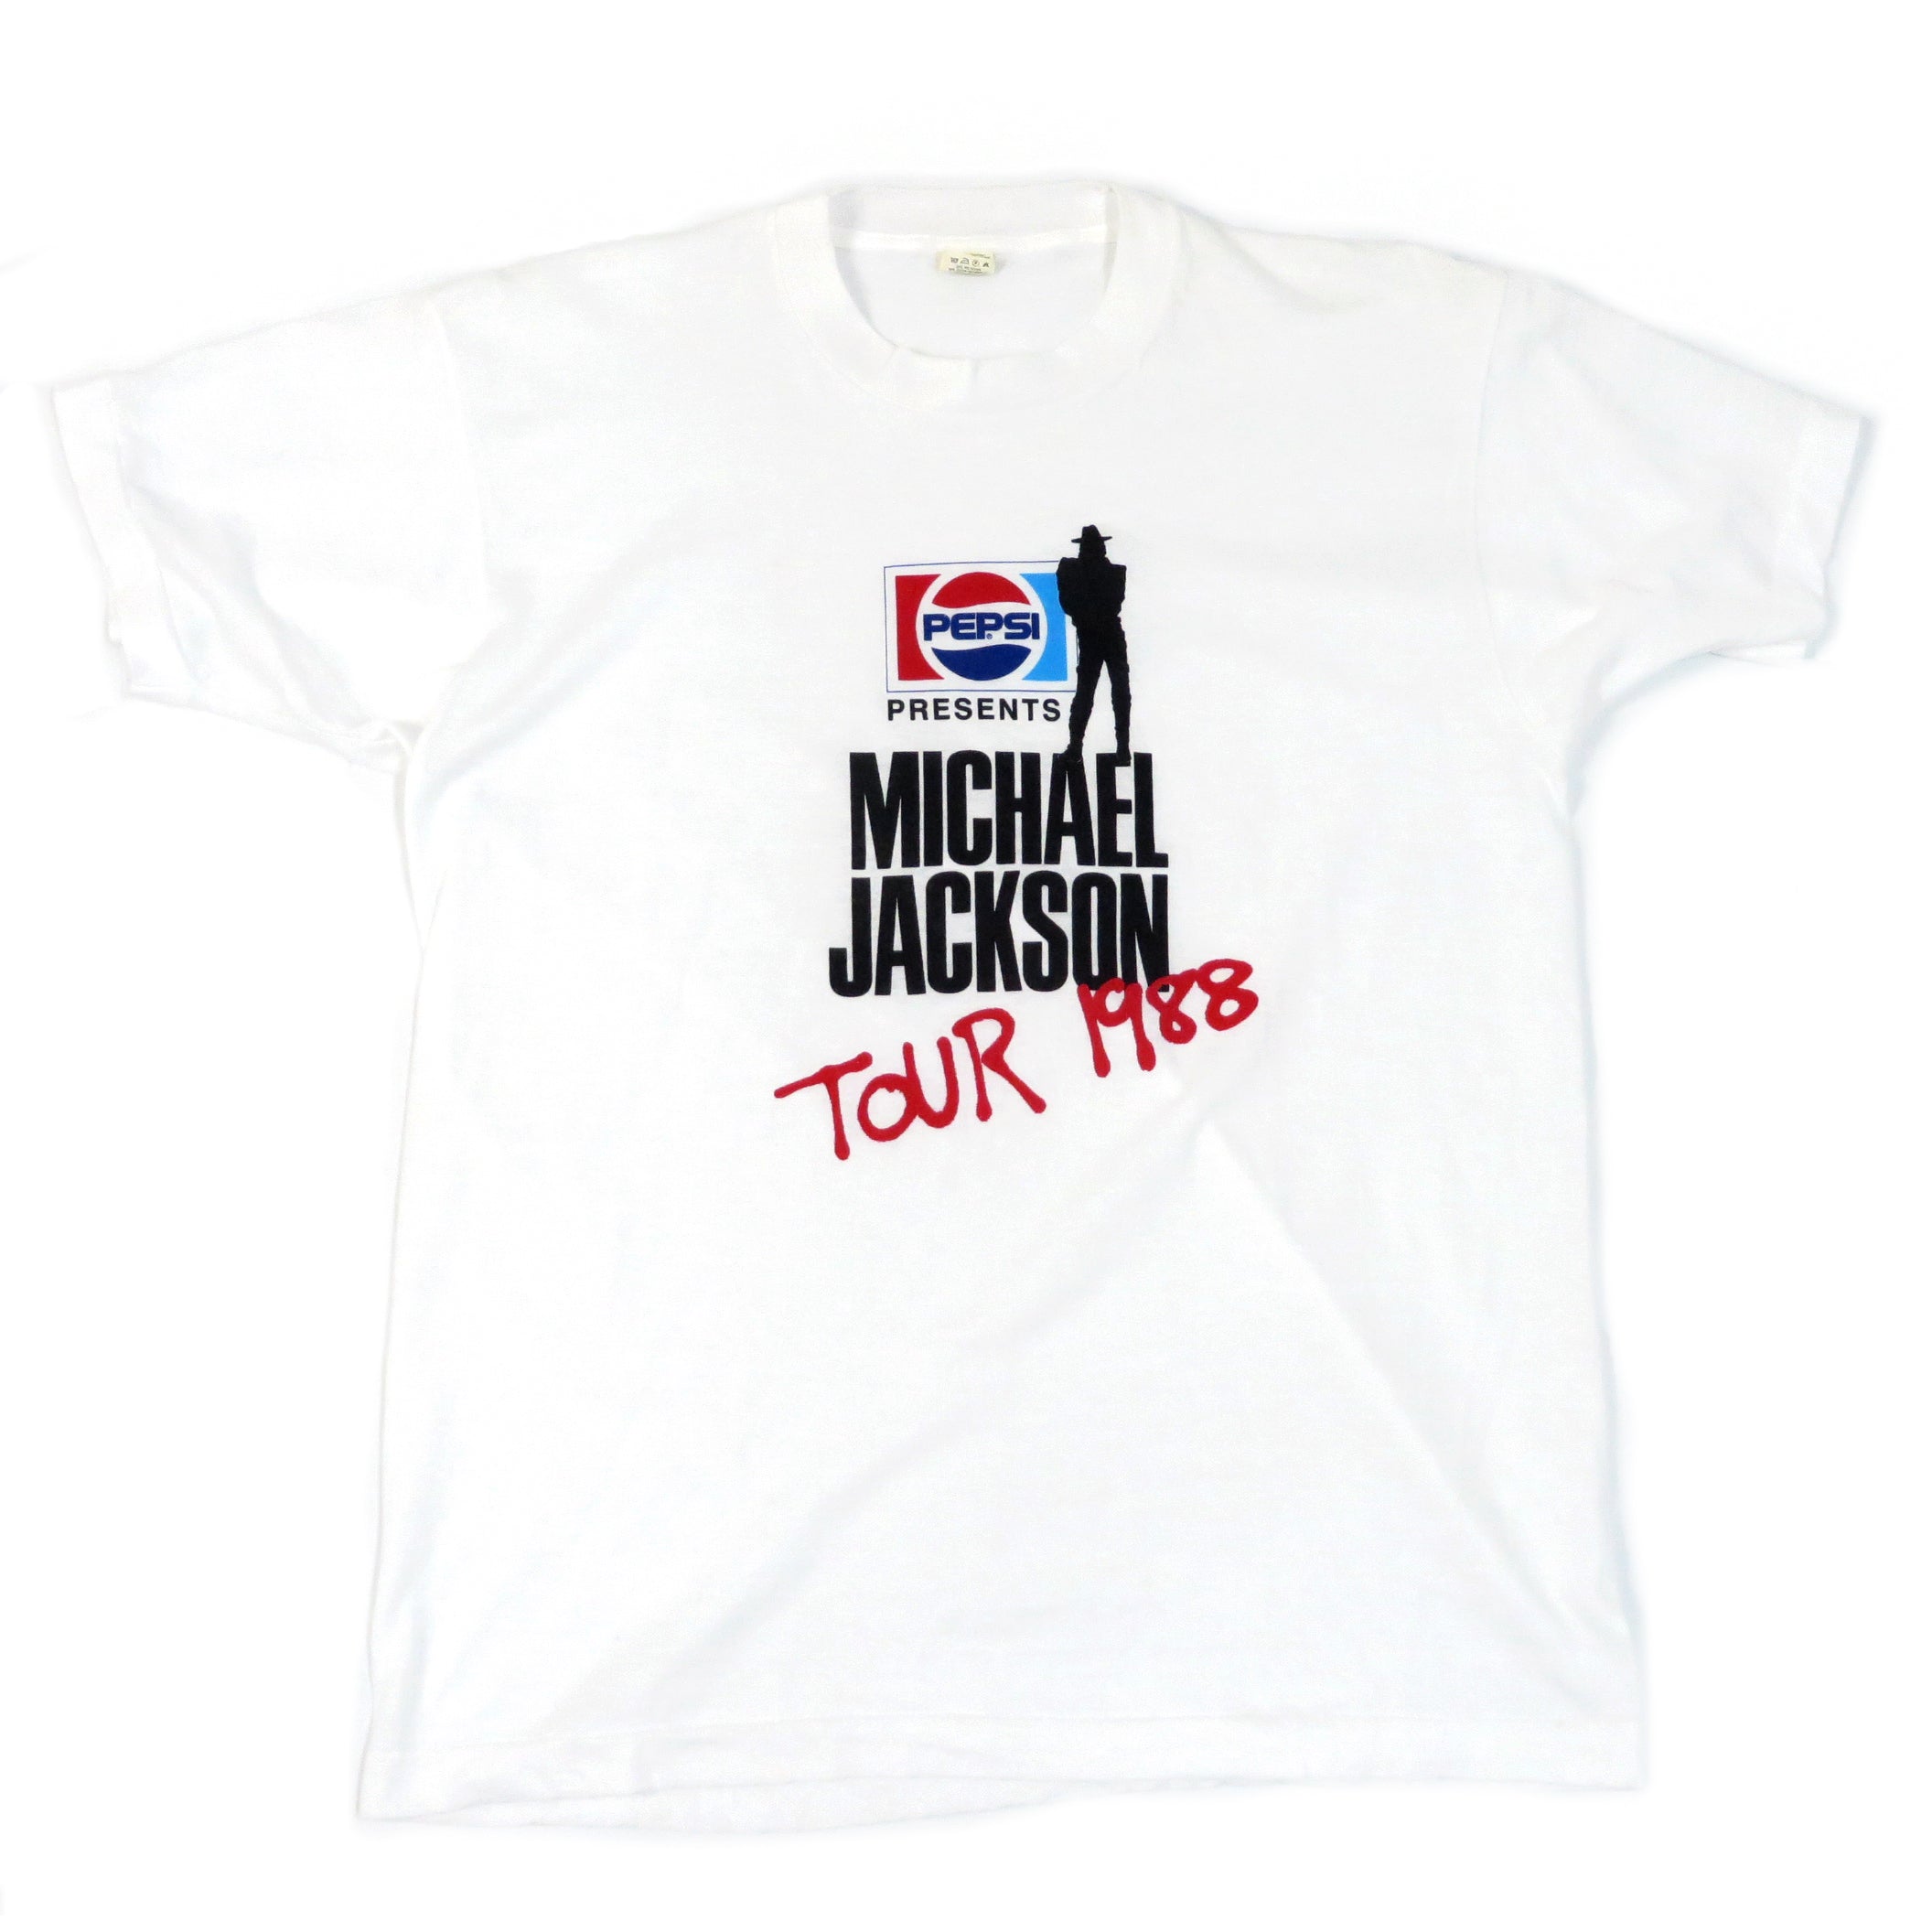 1988 Michael Jackson "Bad" Vintage World Tour Tee Shirt